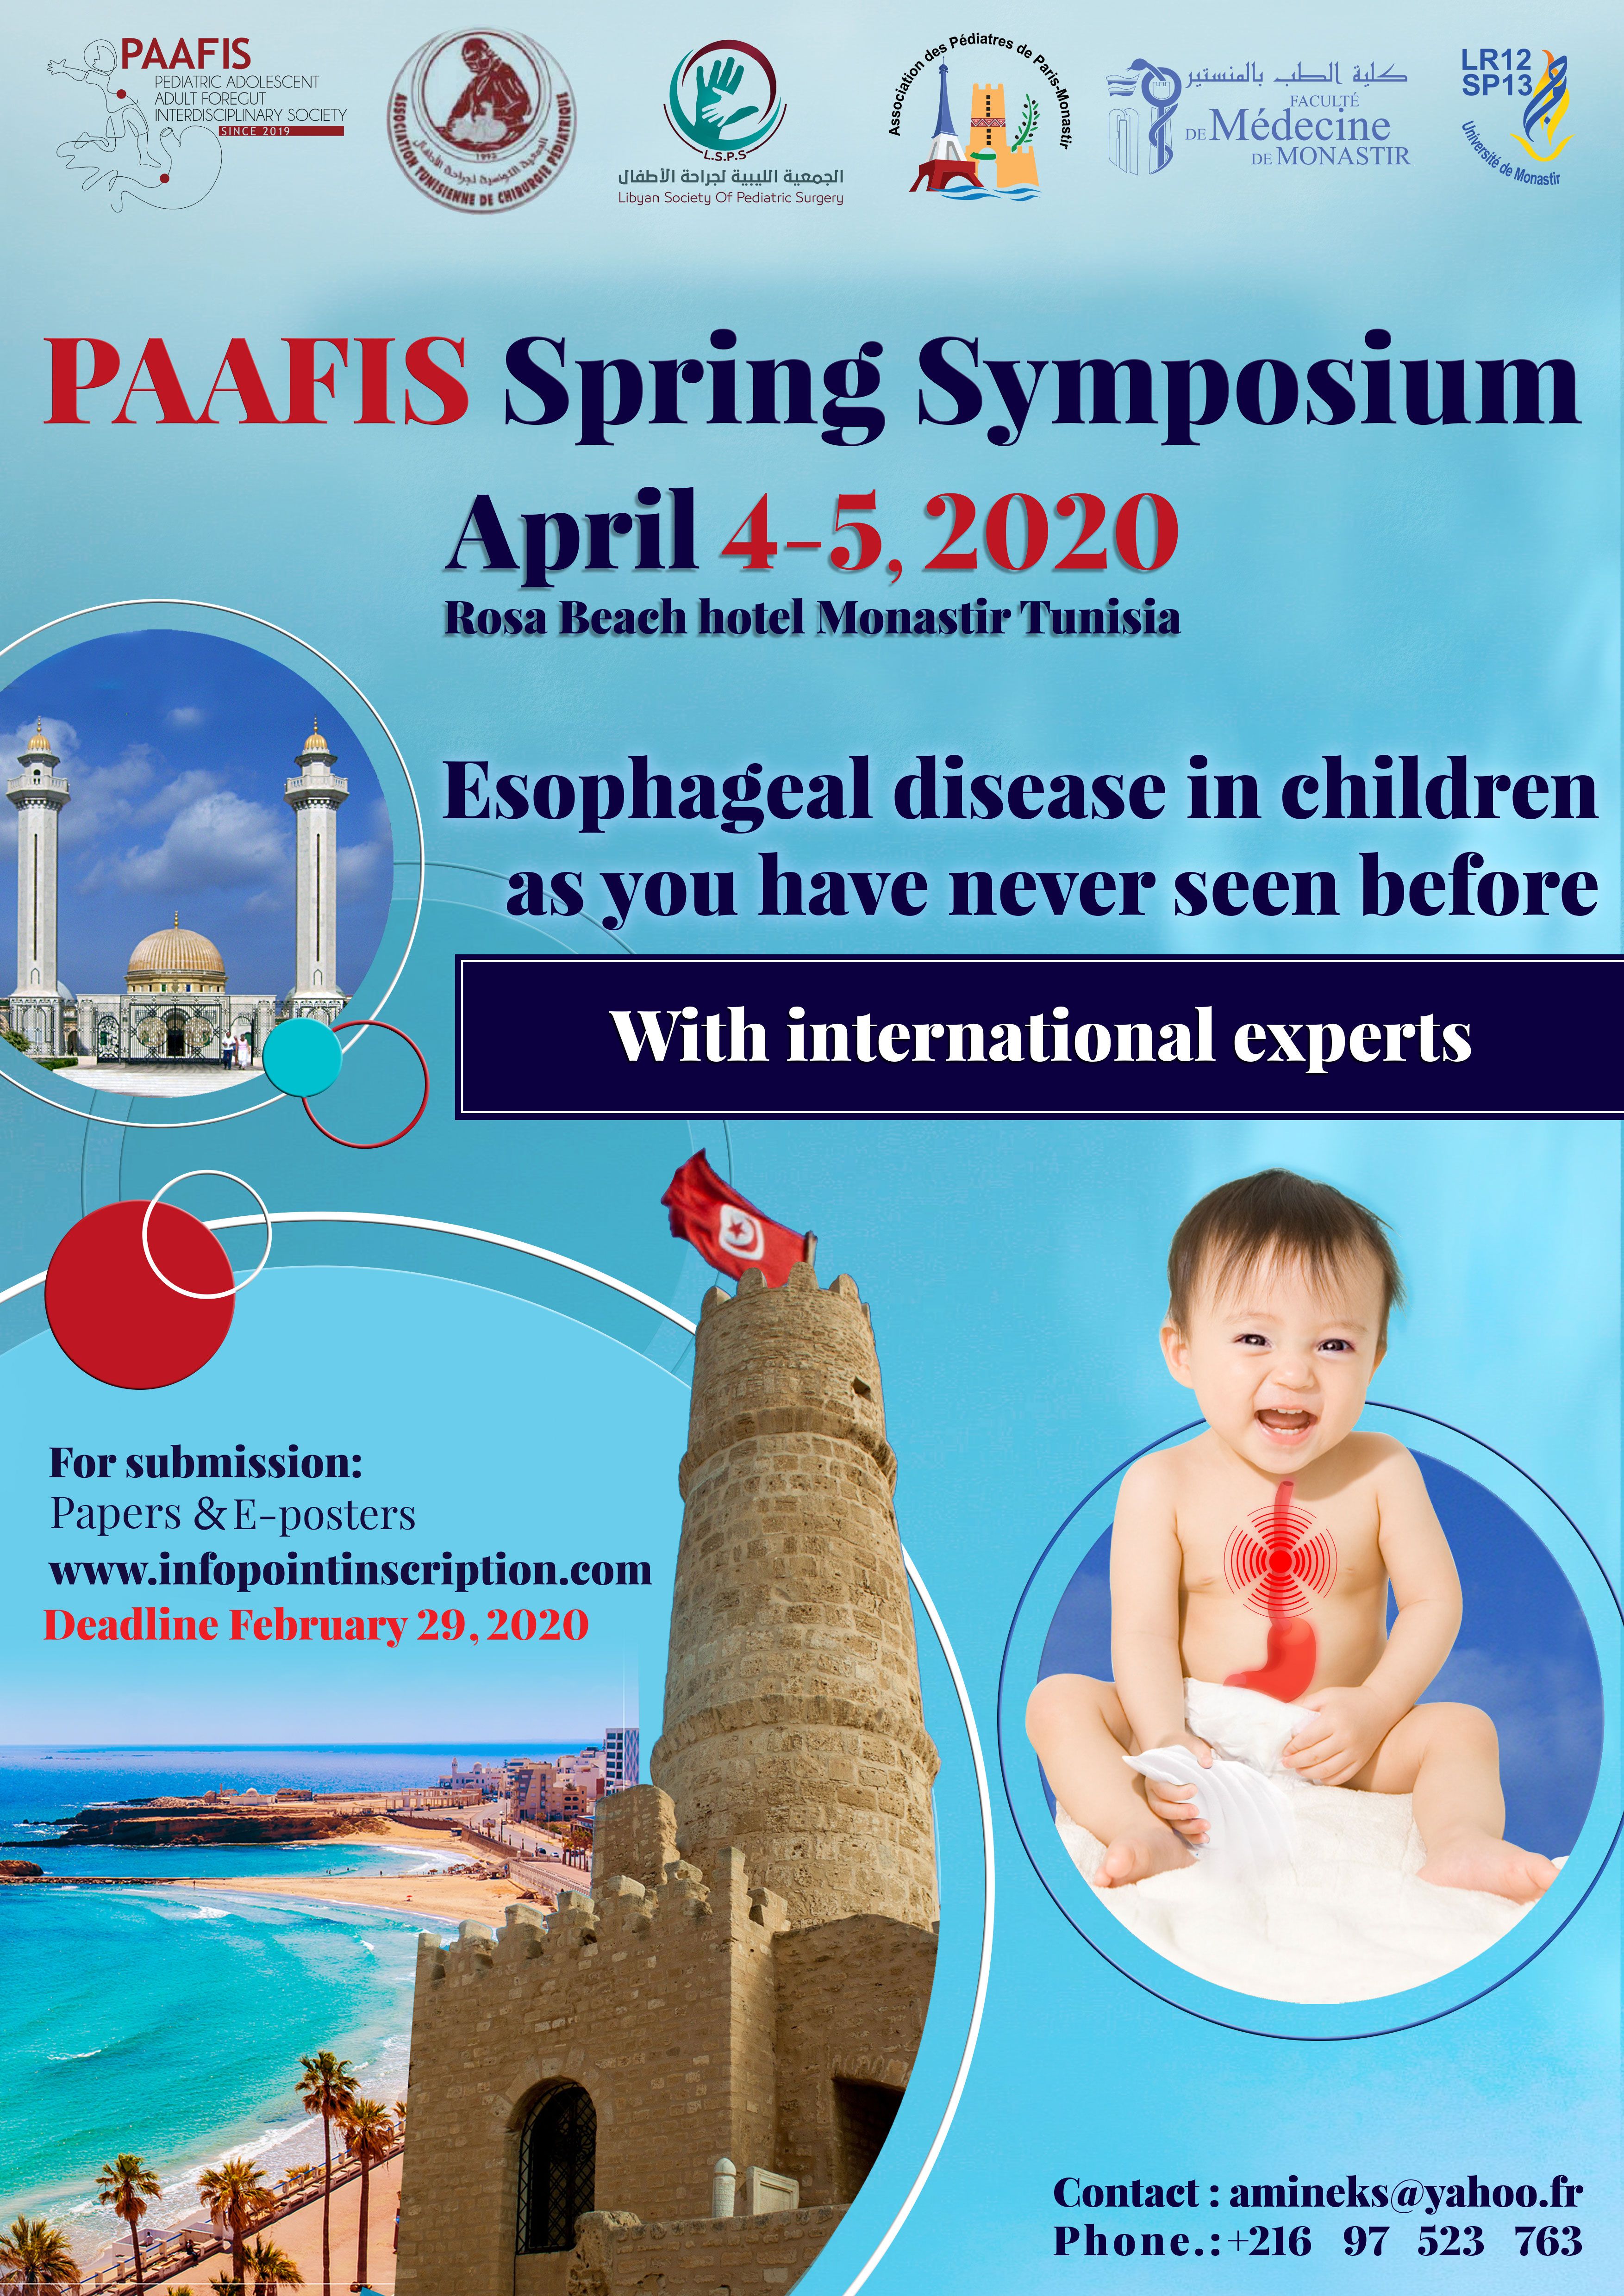 PAAFIS Spring Symposium, April 4-5, 2020 - Tunisia affiche